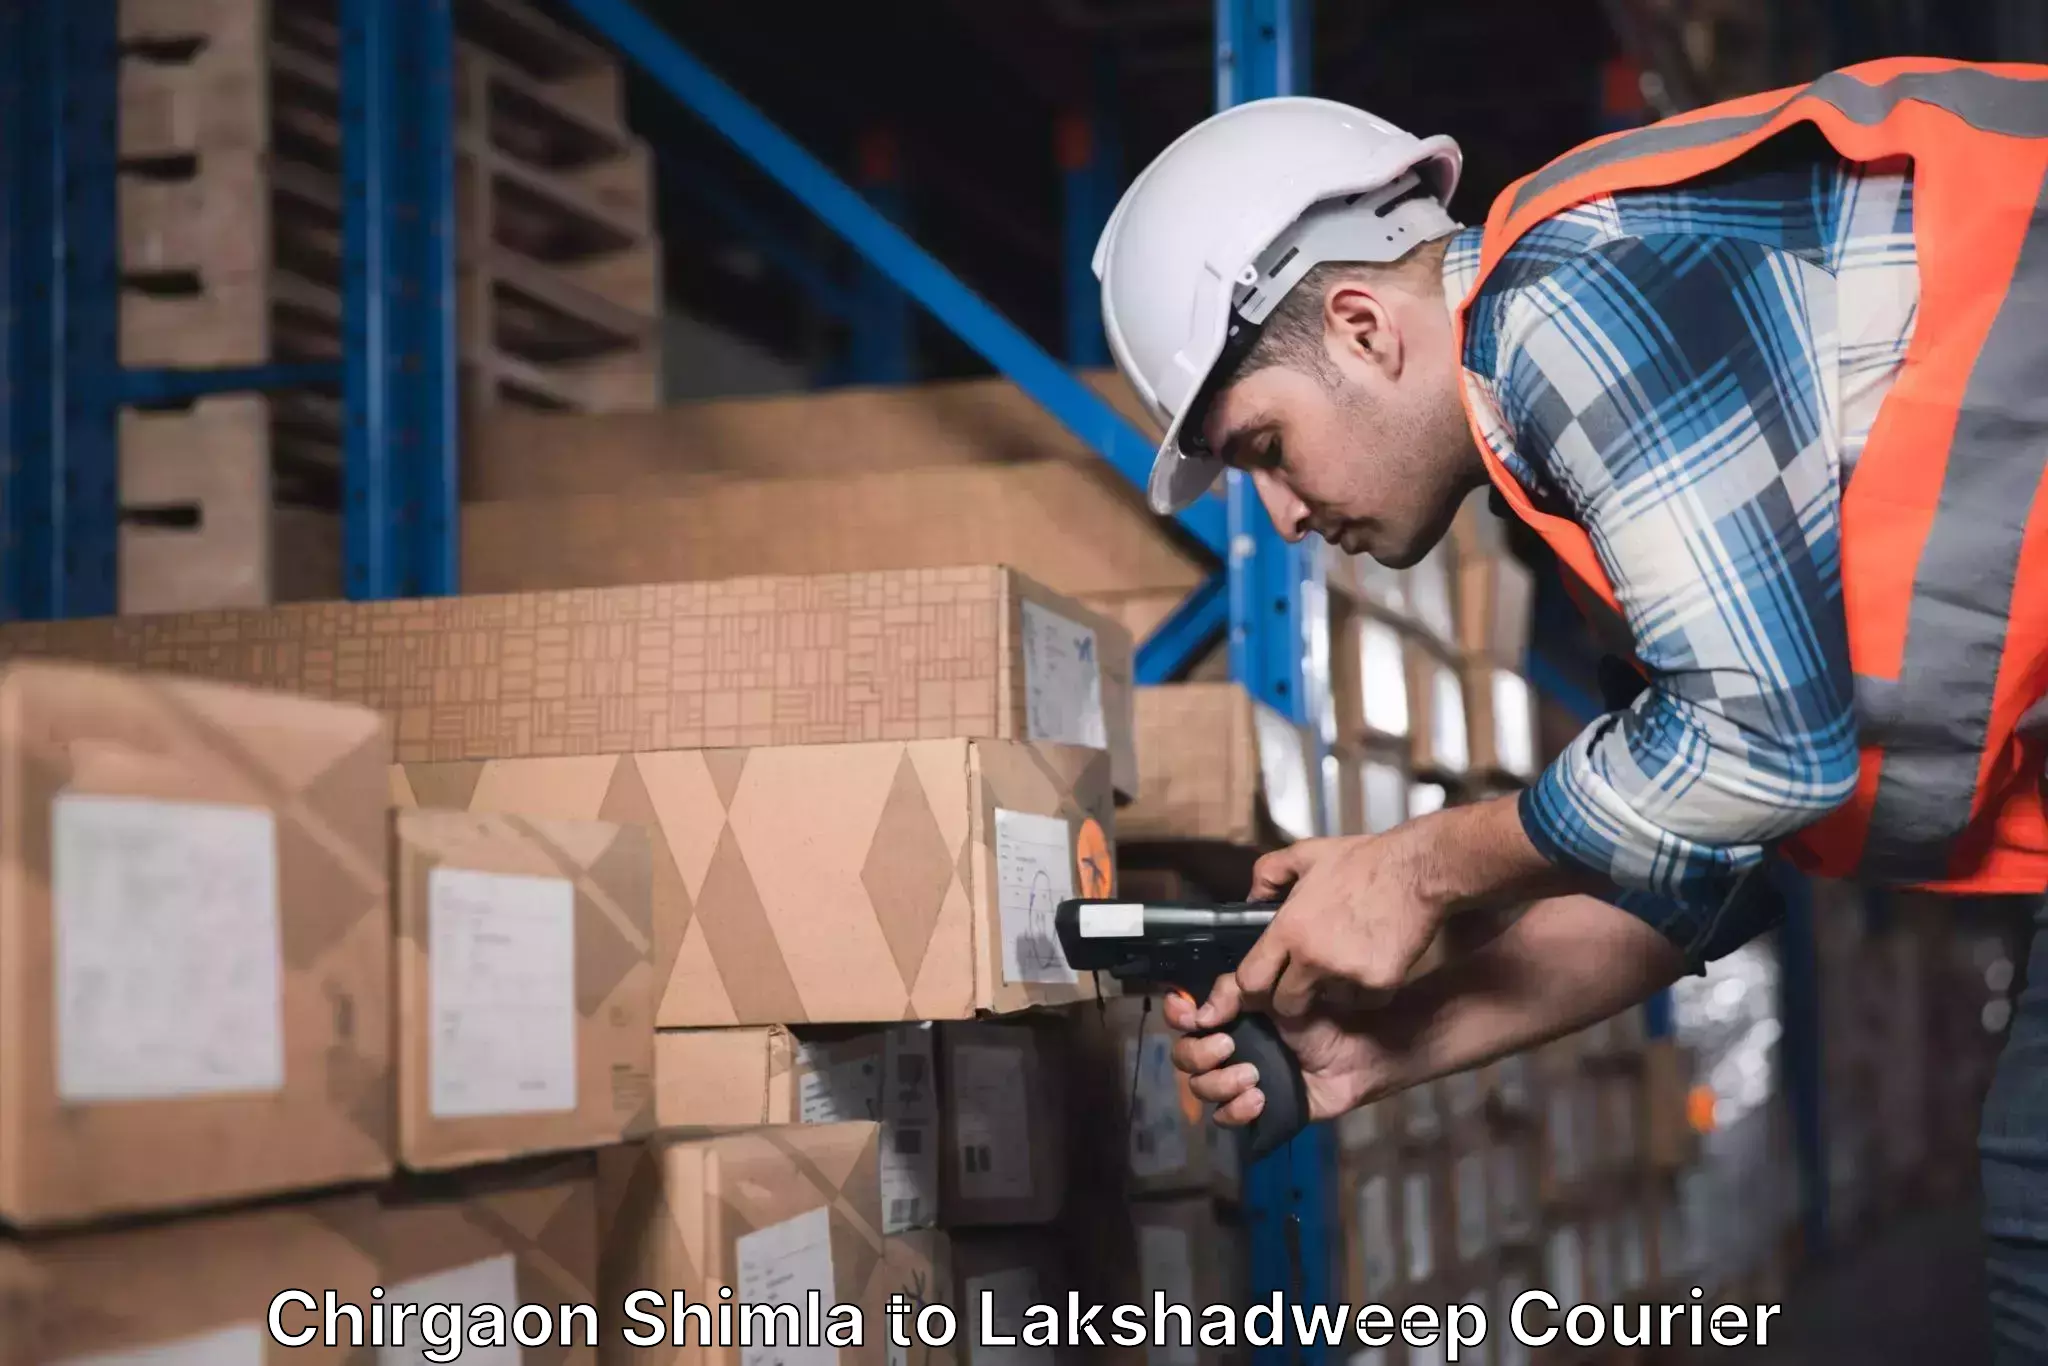 Advanced shipping technology Chirgaon Shimla to Lakshadweep